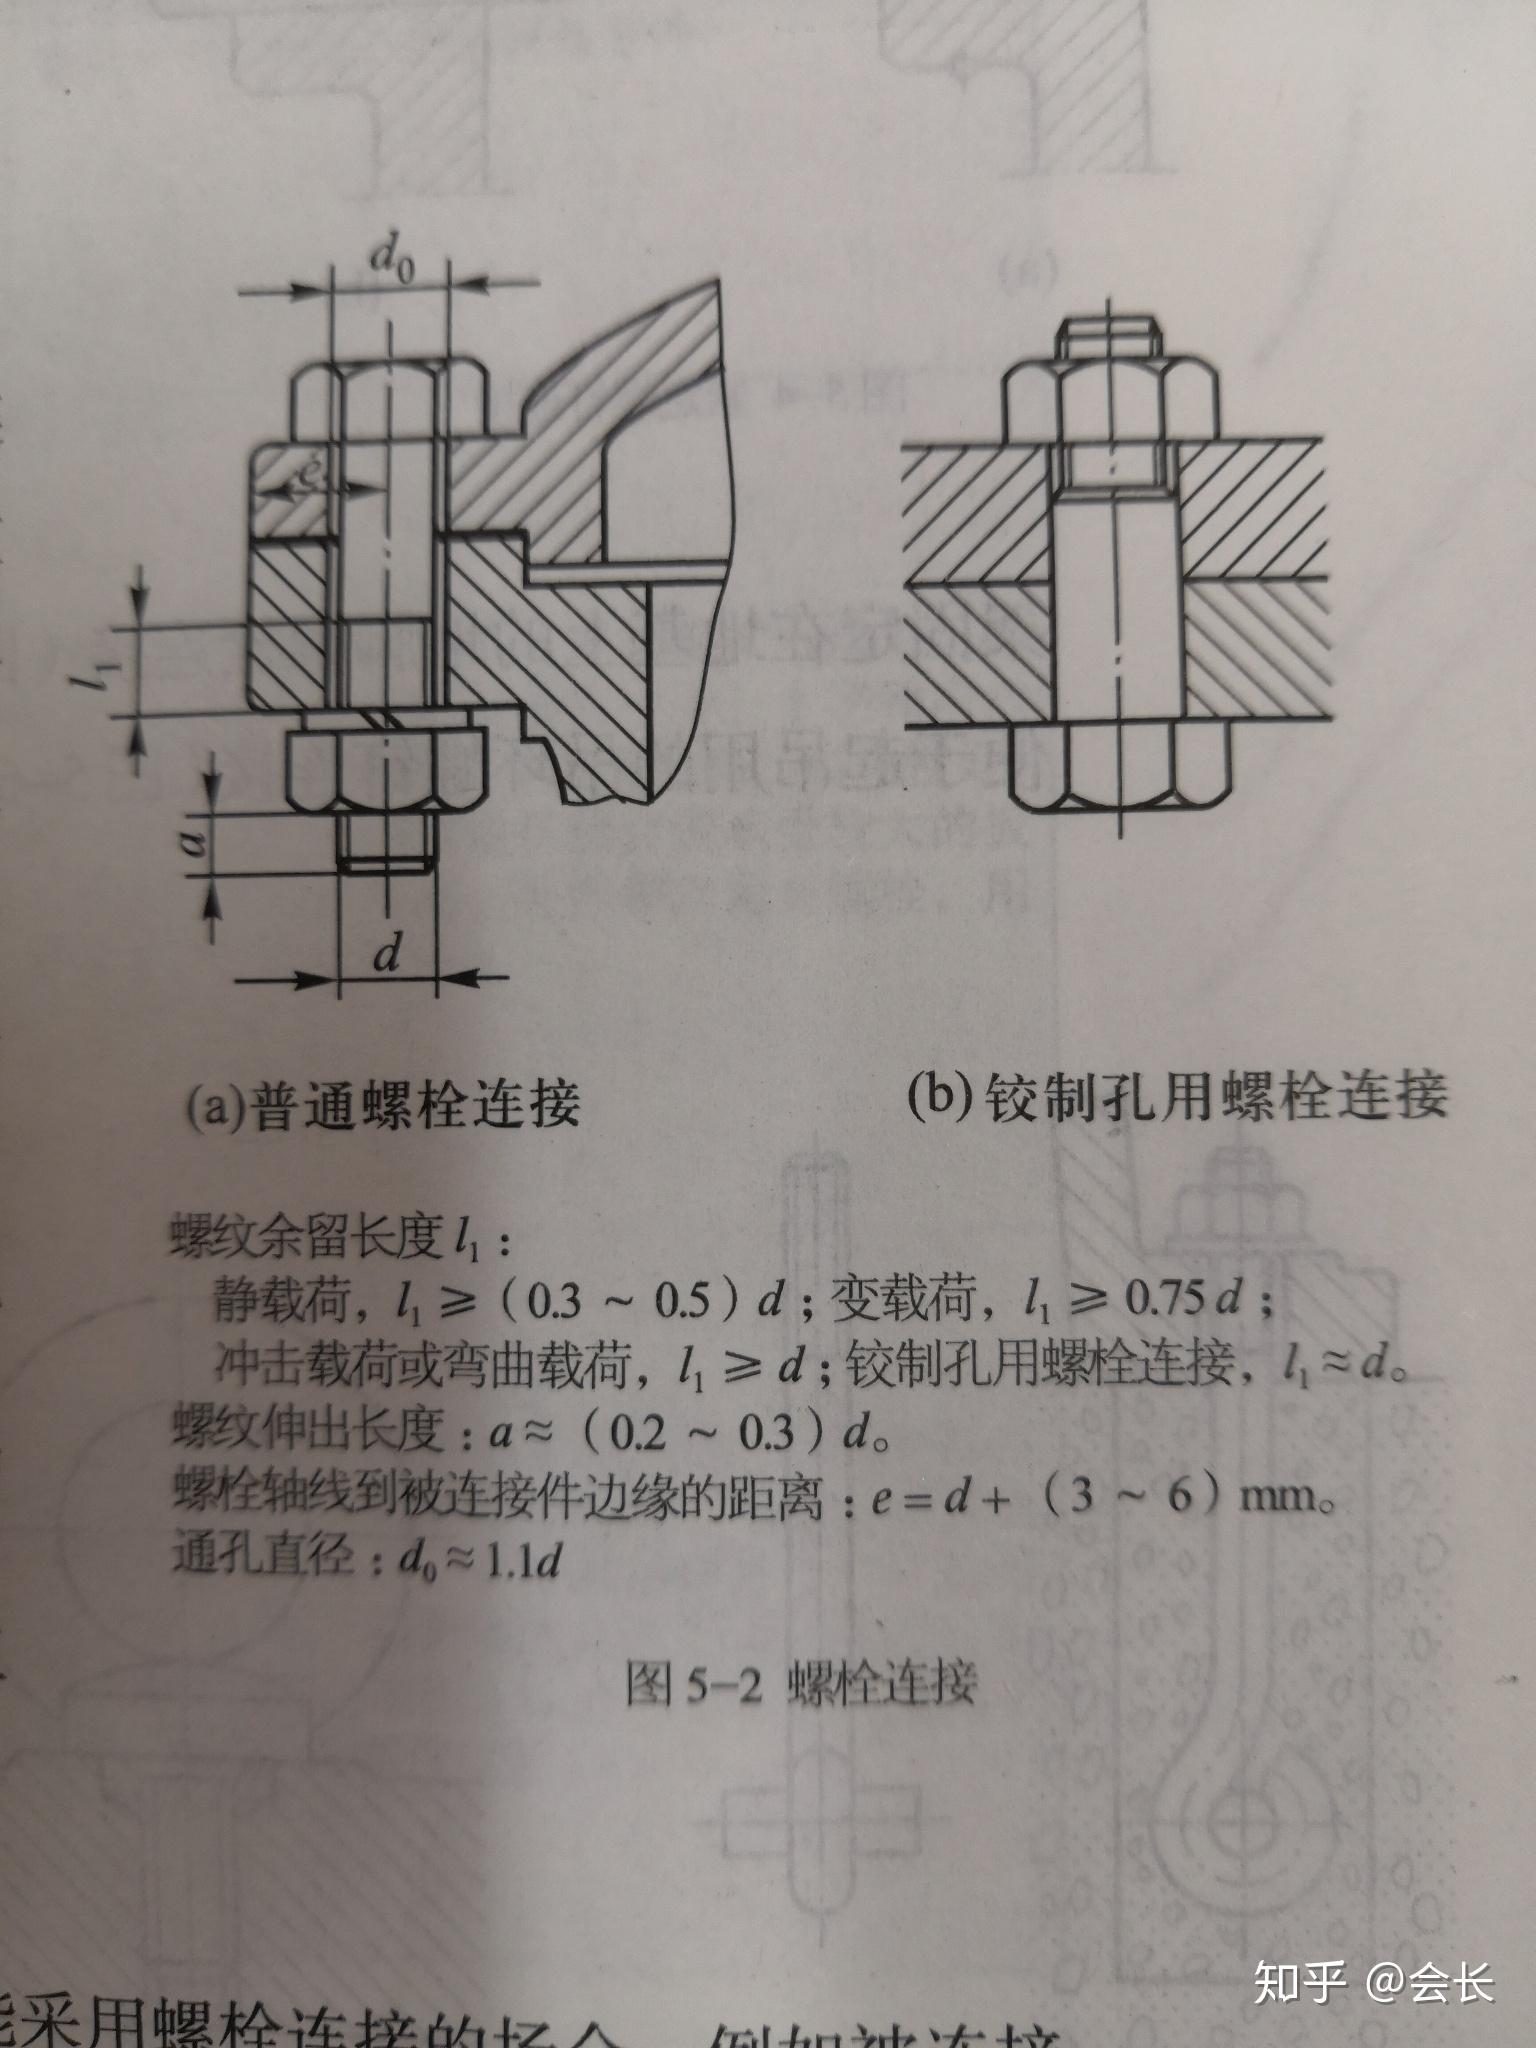 铰制孔螺栓画法图片